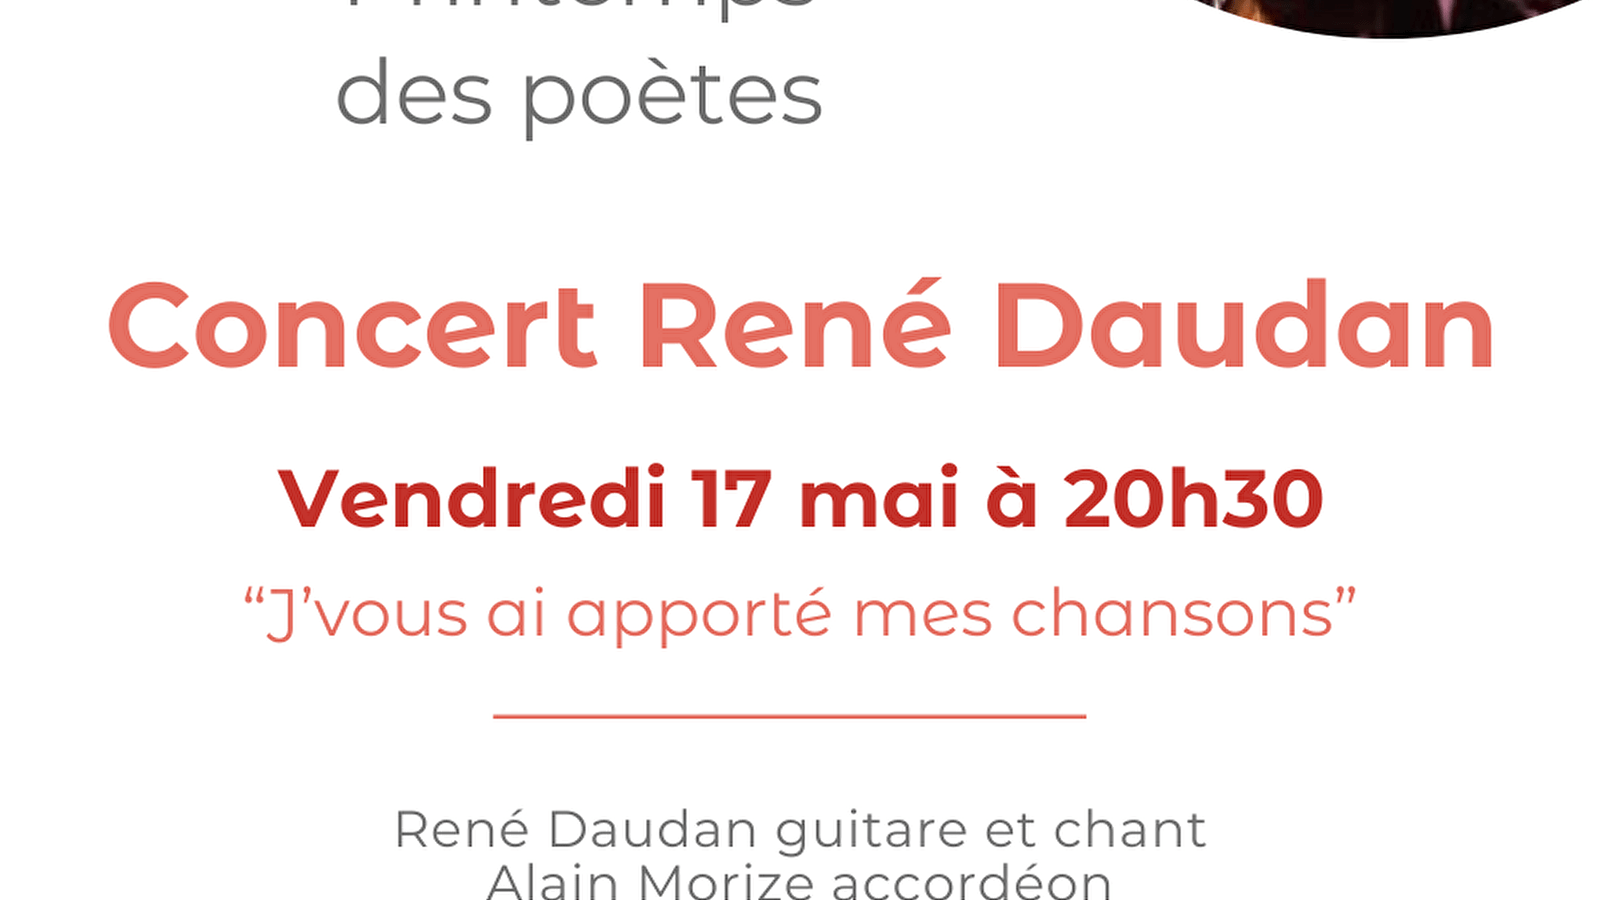 Concert by René Daudan in Précy-sous-Thil